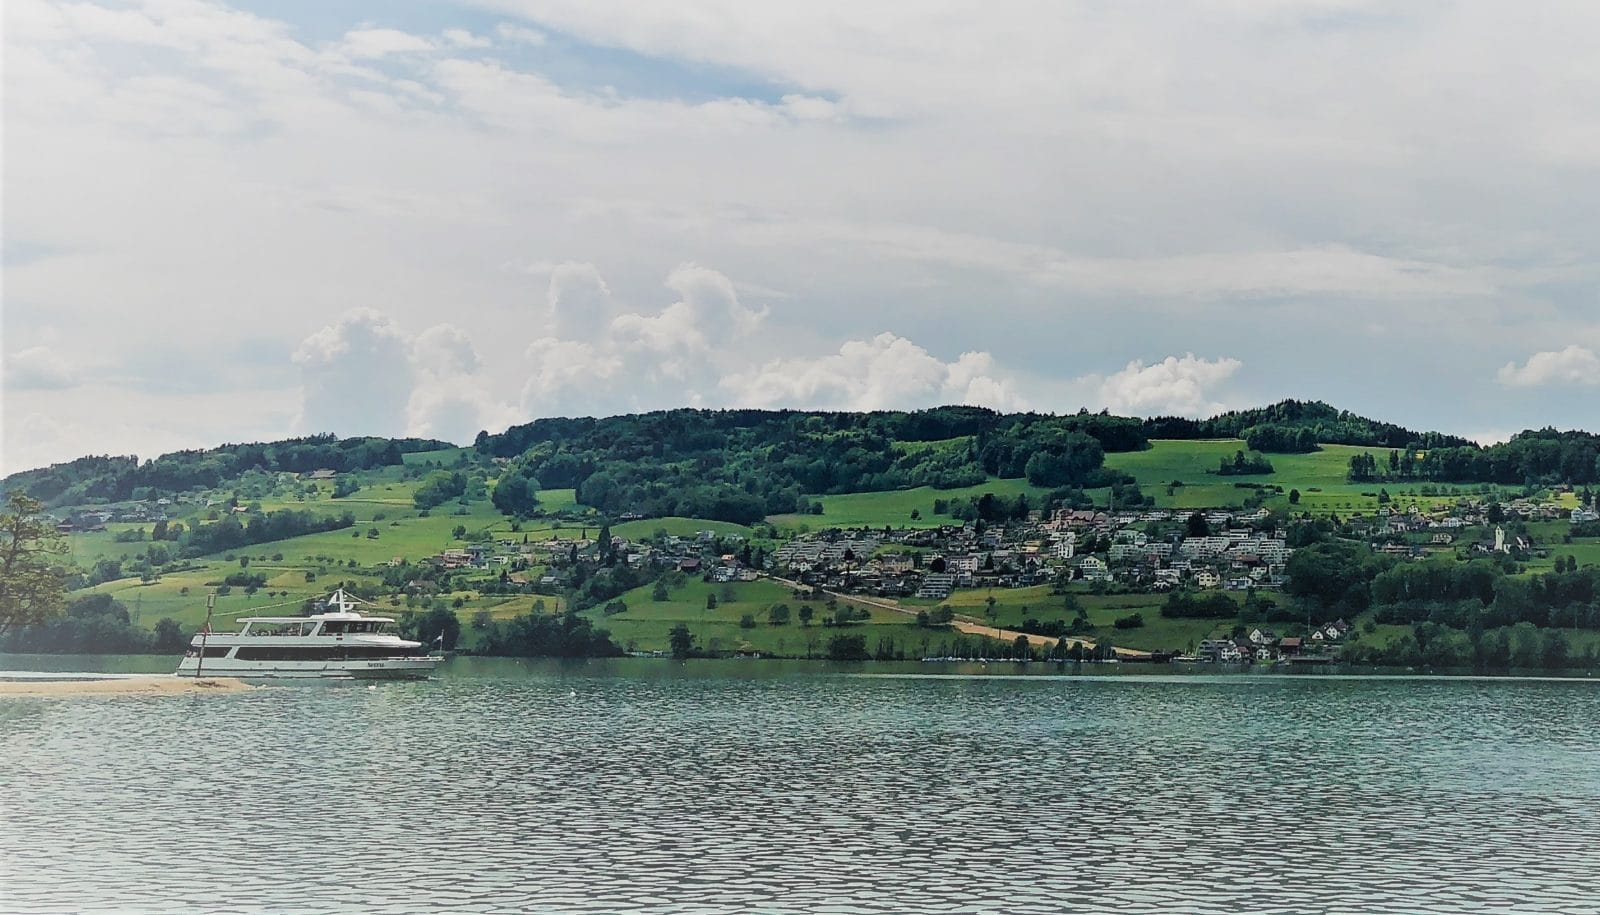 Familien-Ausflüge mit dem Schiff auf Schweizer Seen mal ehrlich